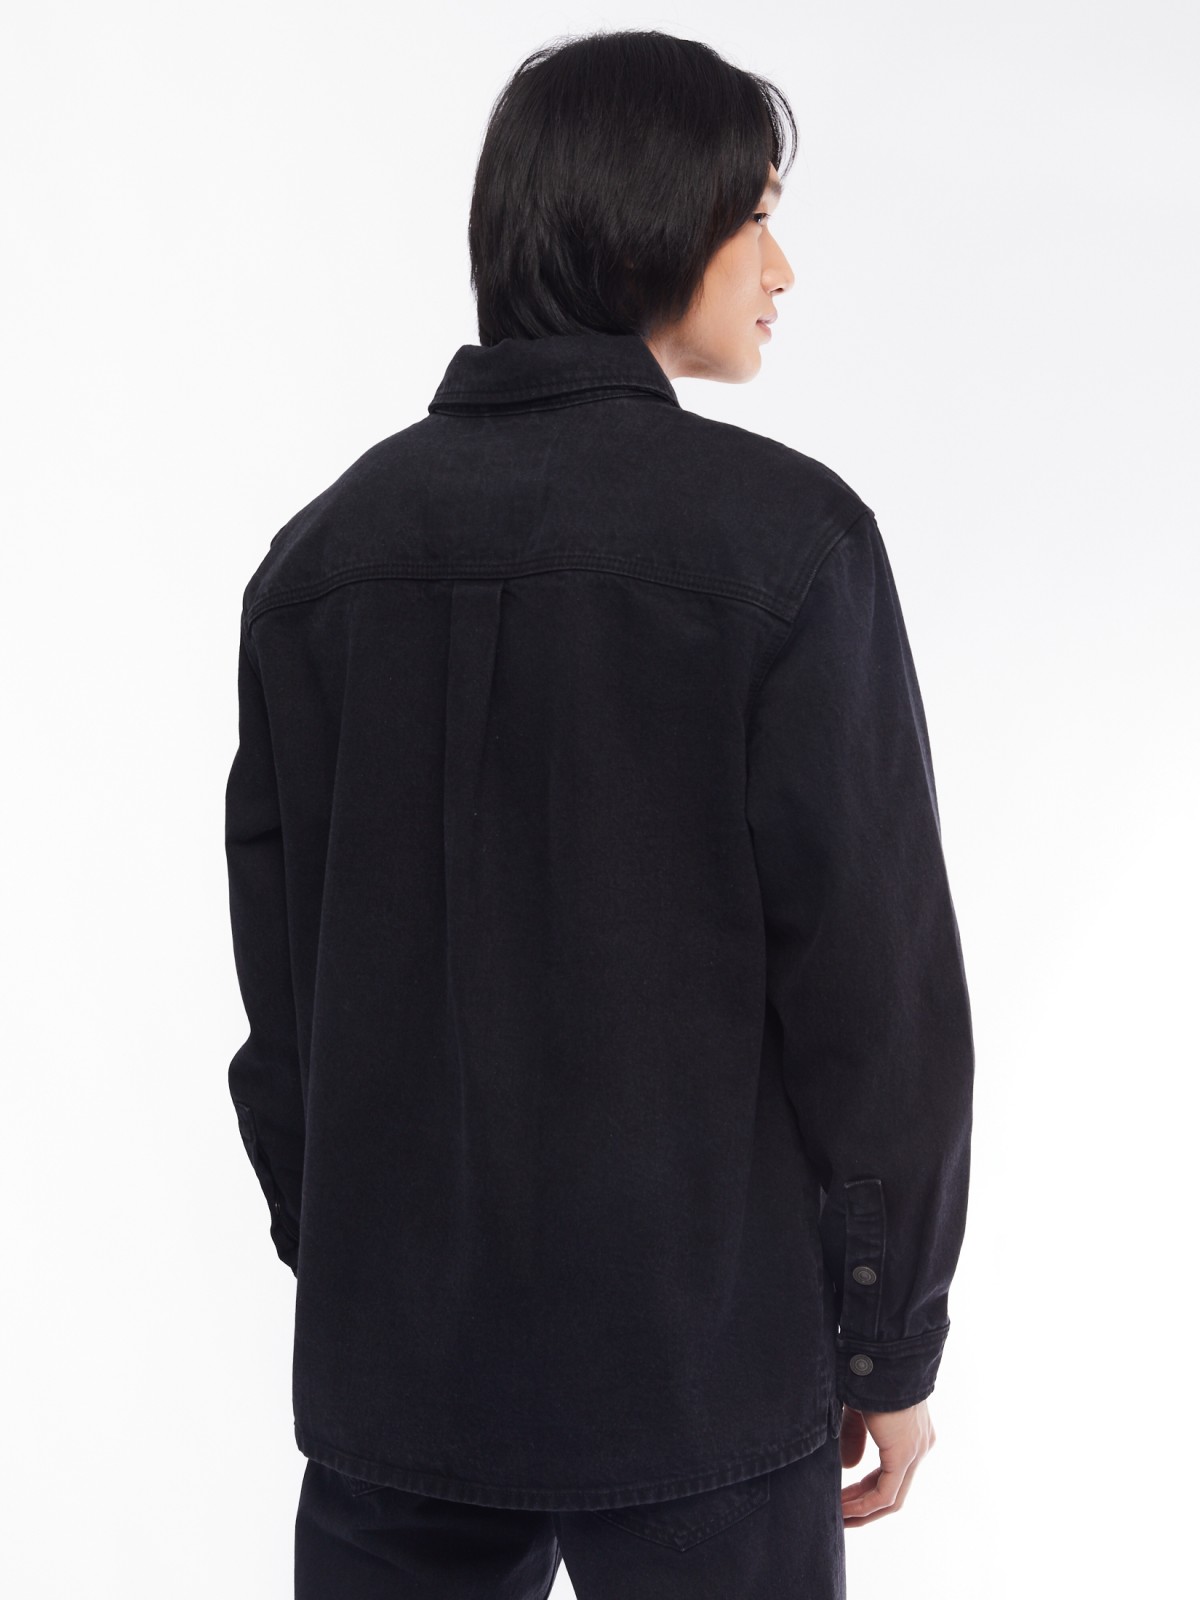 Джинсовая куртка-рубашка на кнопках zolla 014125D0V023, цвет черный, размер S - фото 6